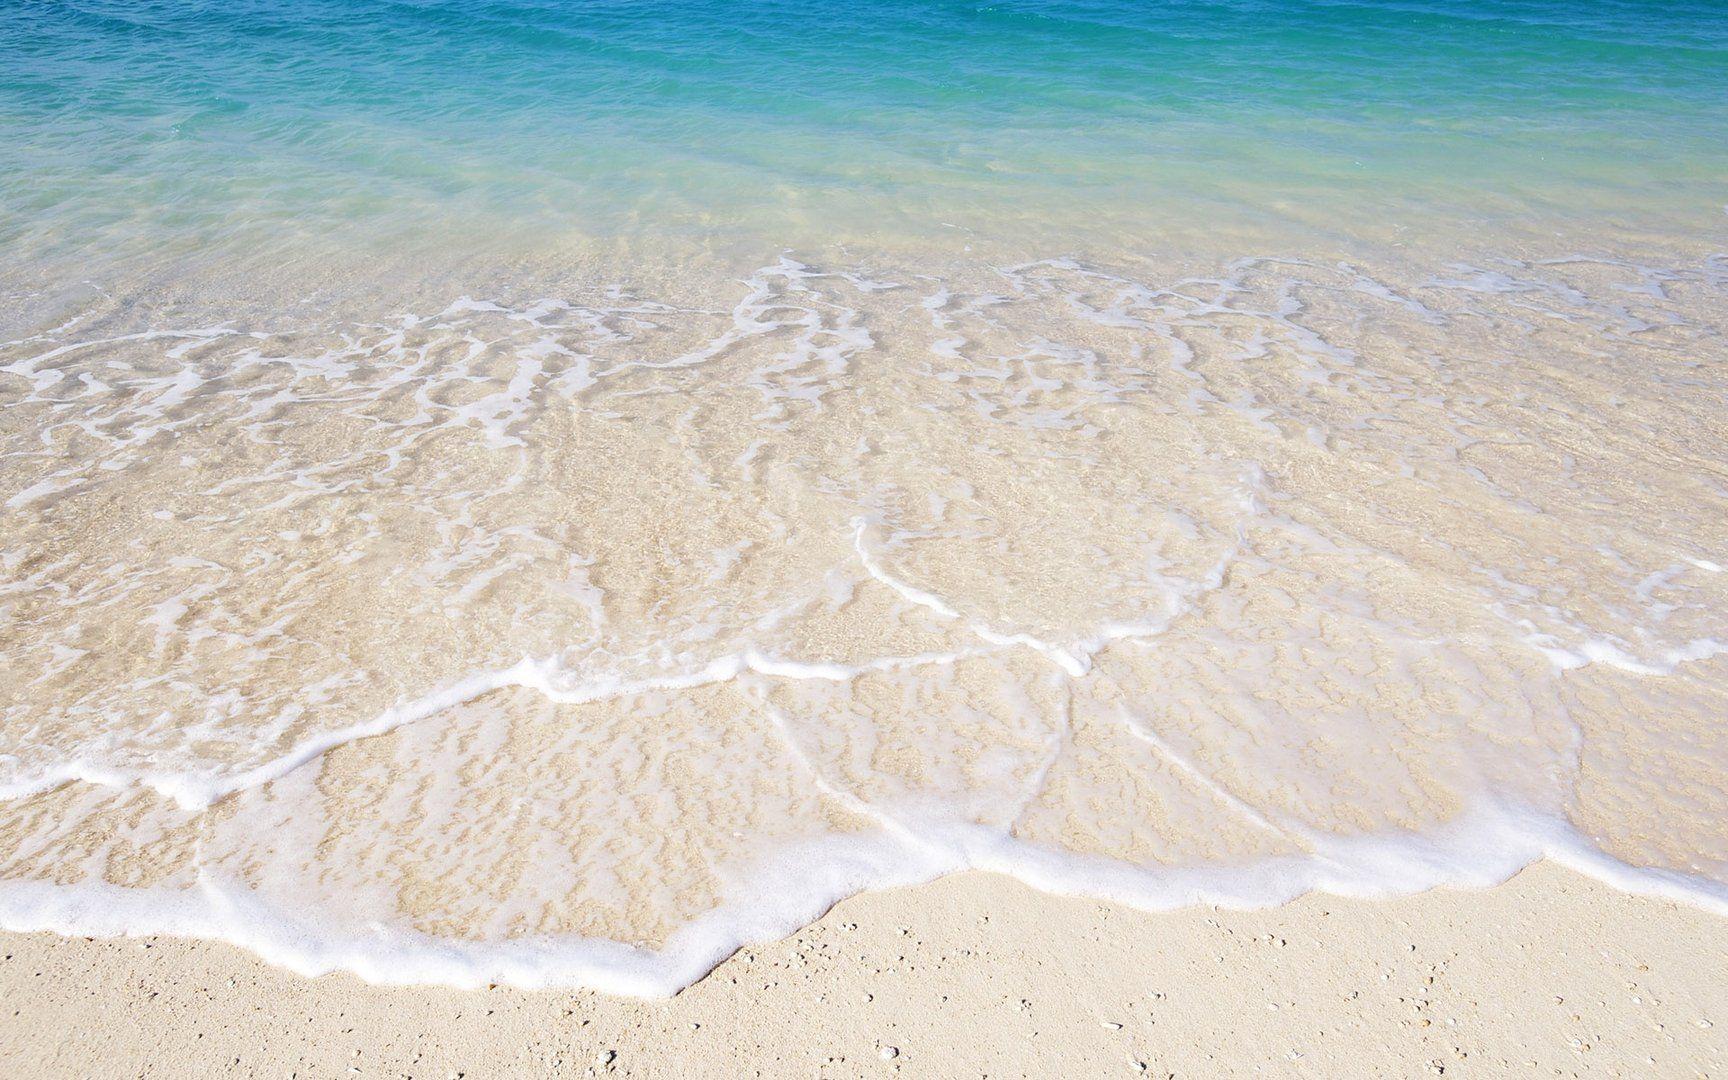  Sand Hintergrundbild 1728x1080. Beach Sand Wallpaper Free Beach Sand Background